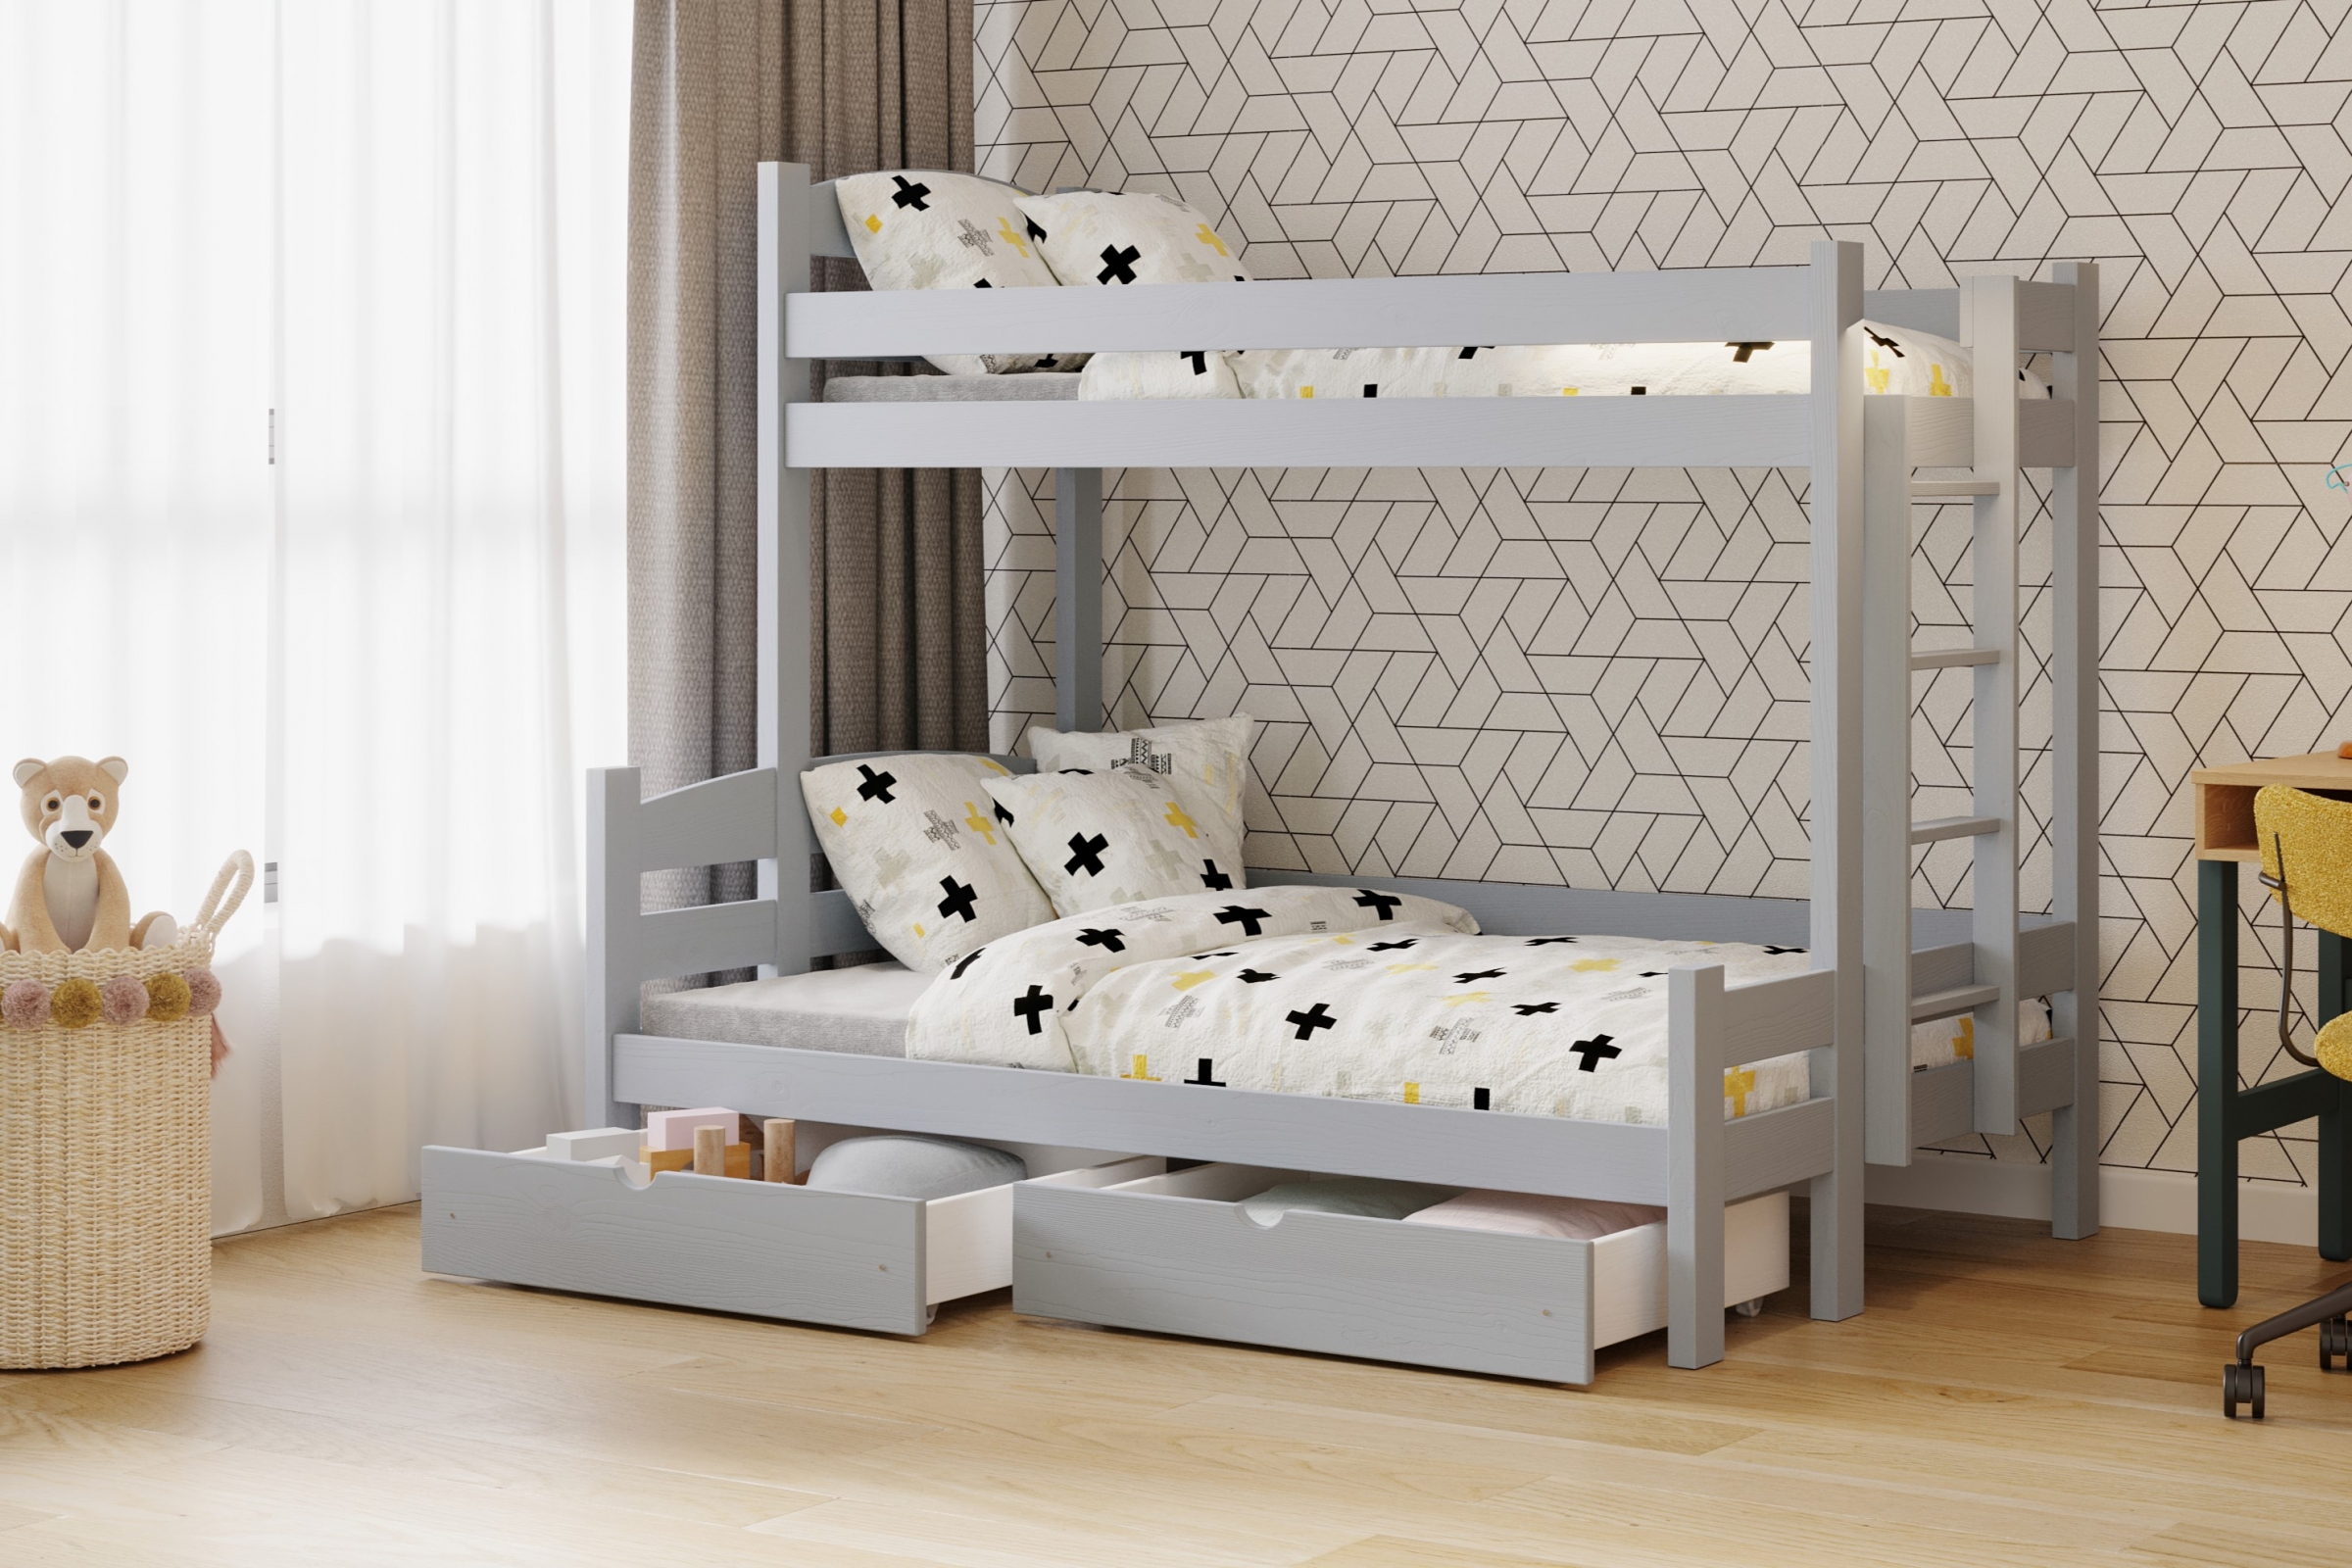 Lovic emeletes ágy, fiókokkal, jobb oldali - 80x200 cm/140x200 cm - szürke Emeletes ágy fiokokkal Lovic - szürke - aranzacja